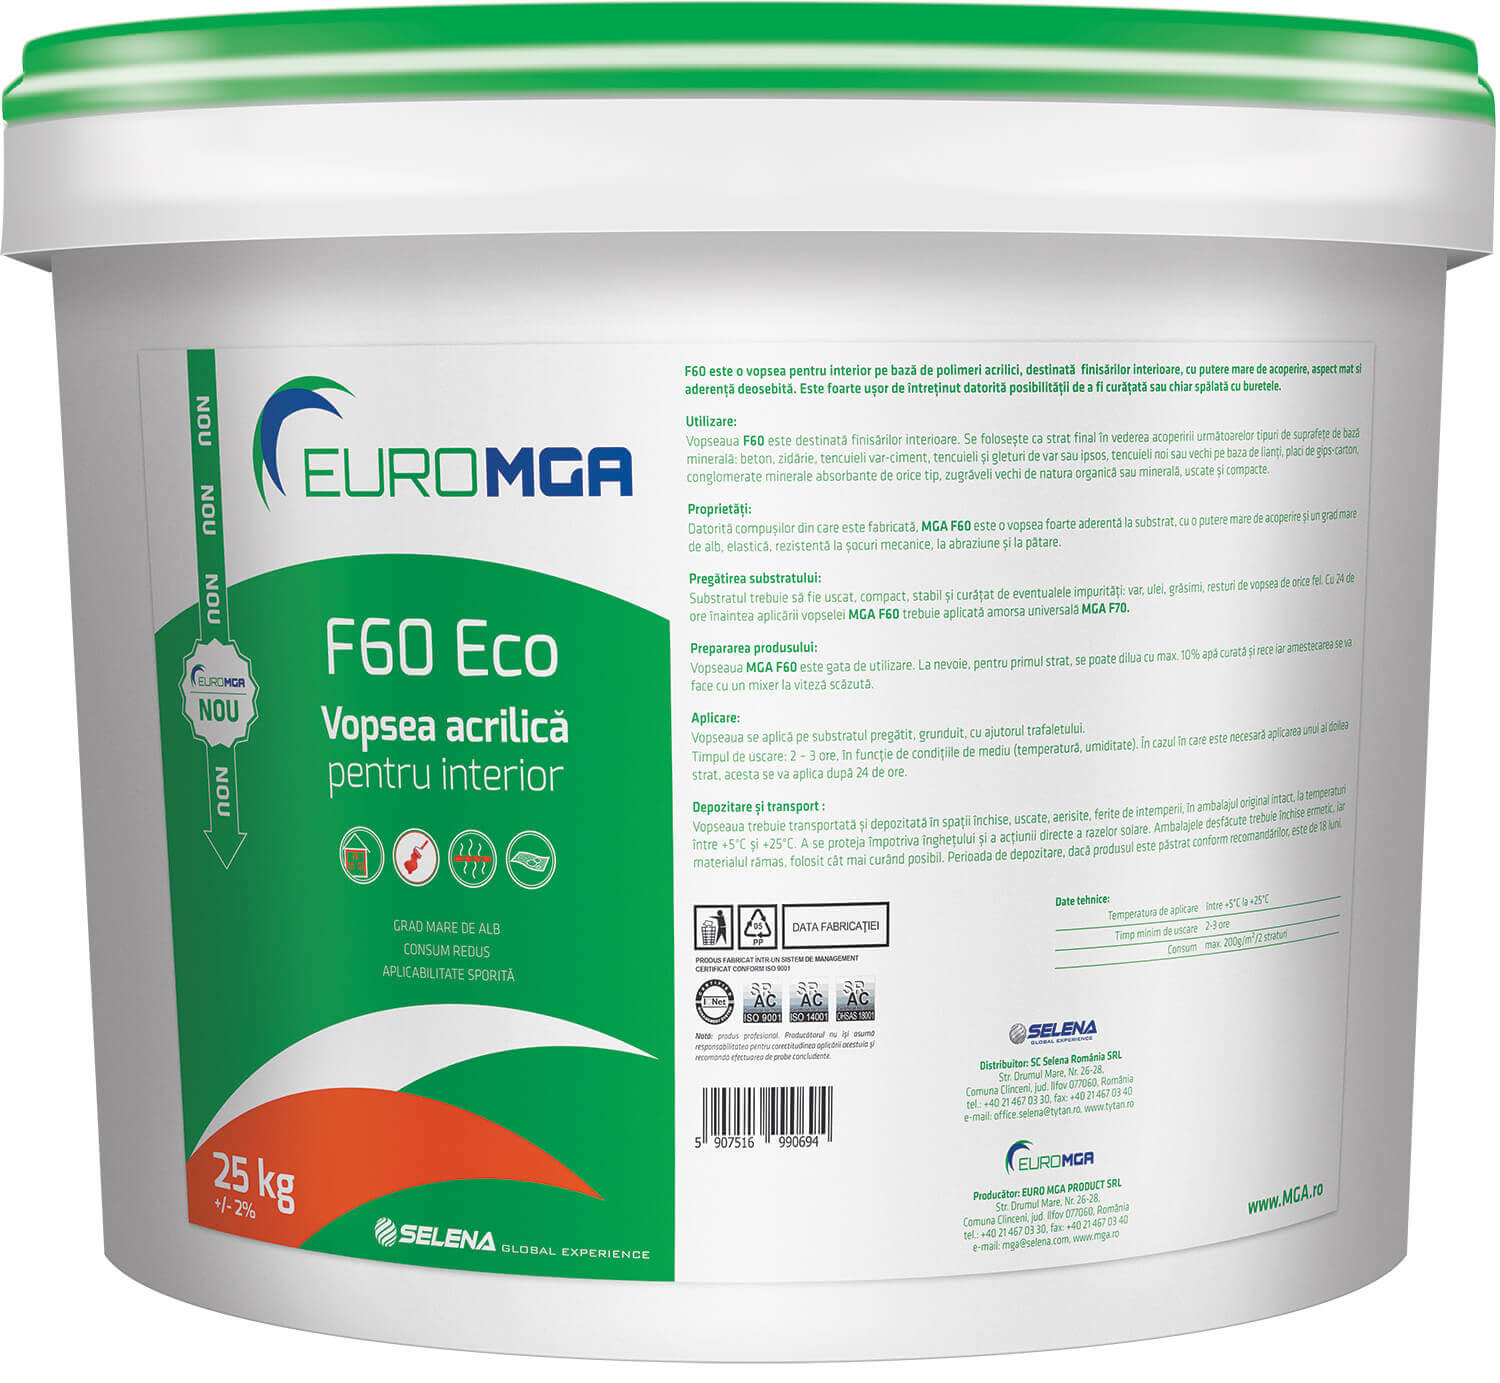 EURO MGA F60 Eco vopsea acrilică pentru interior